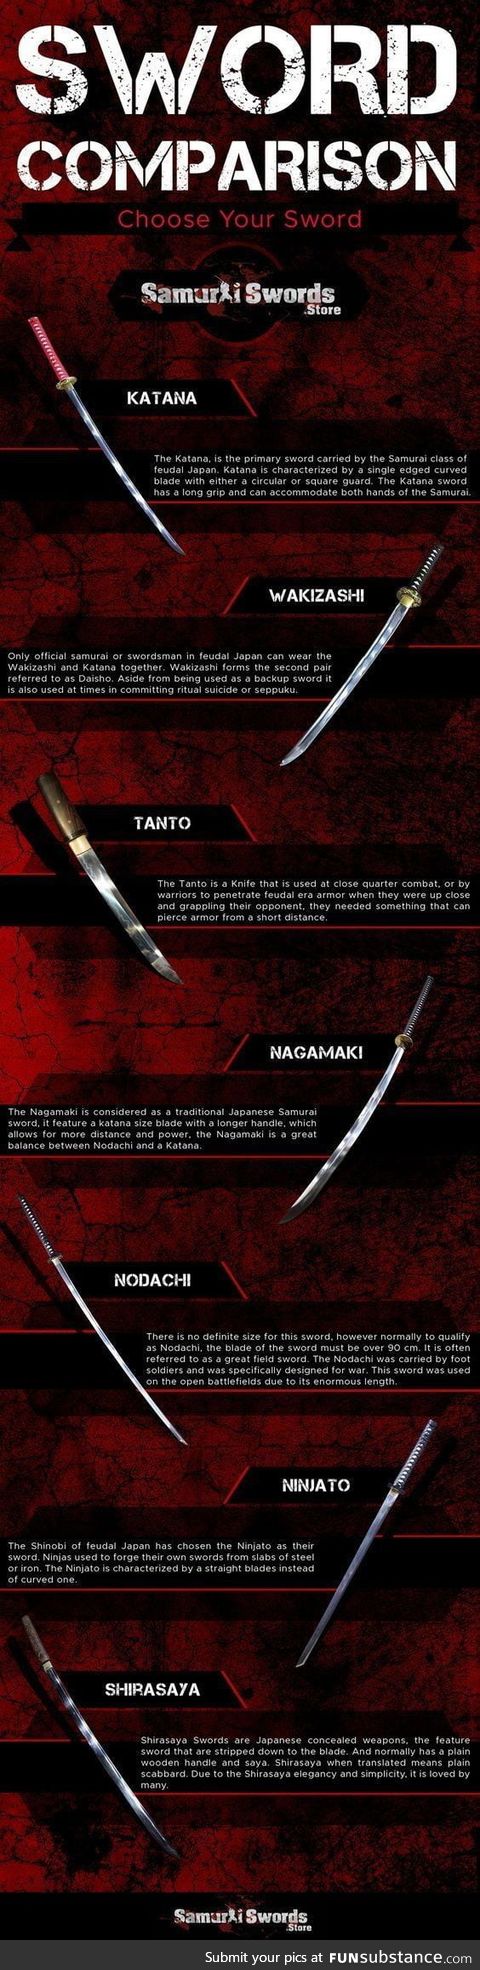 Sword comparison